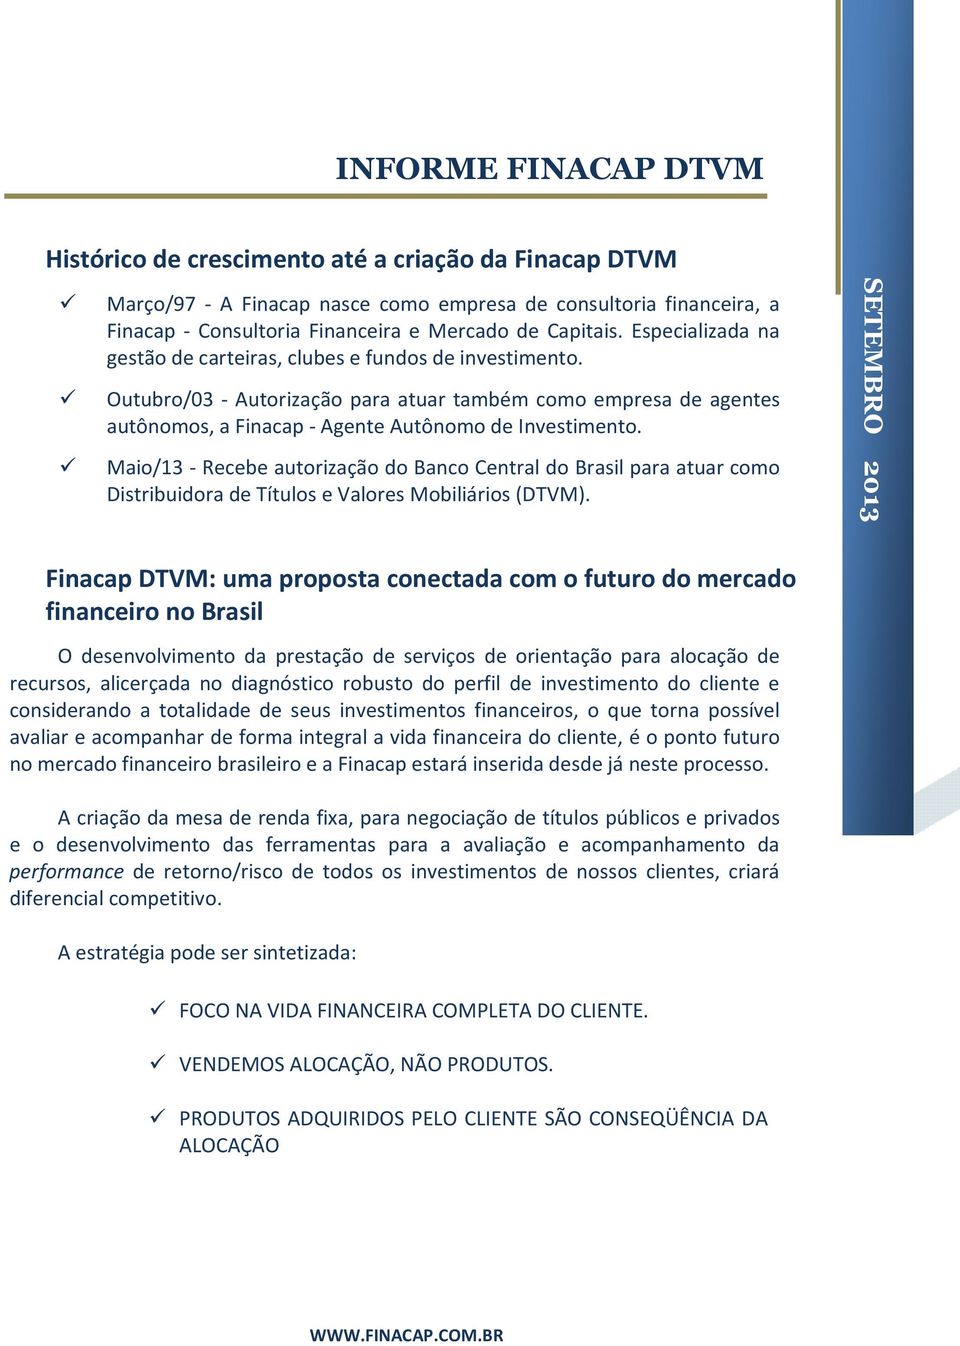 Maio/13 - Recebe autorização do Banco Central do Brasil para atuar como Distribuidora de Títulos e Valores Mobiliários (DTVM).